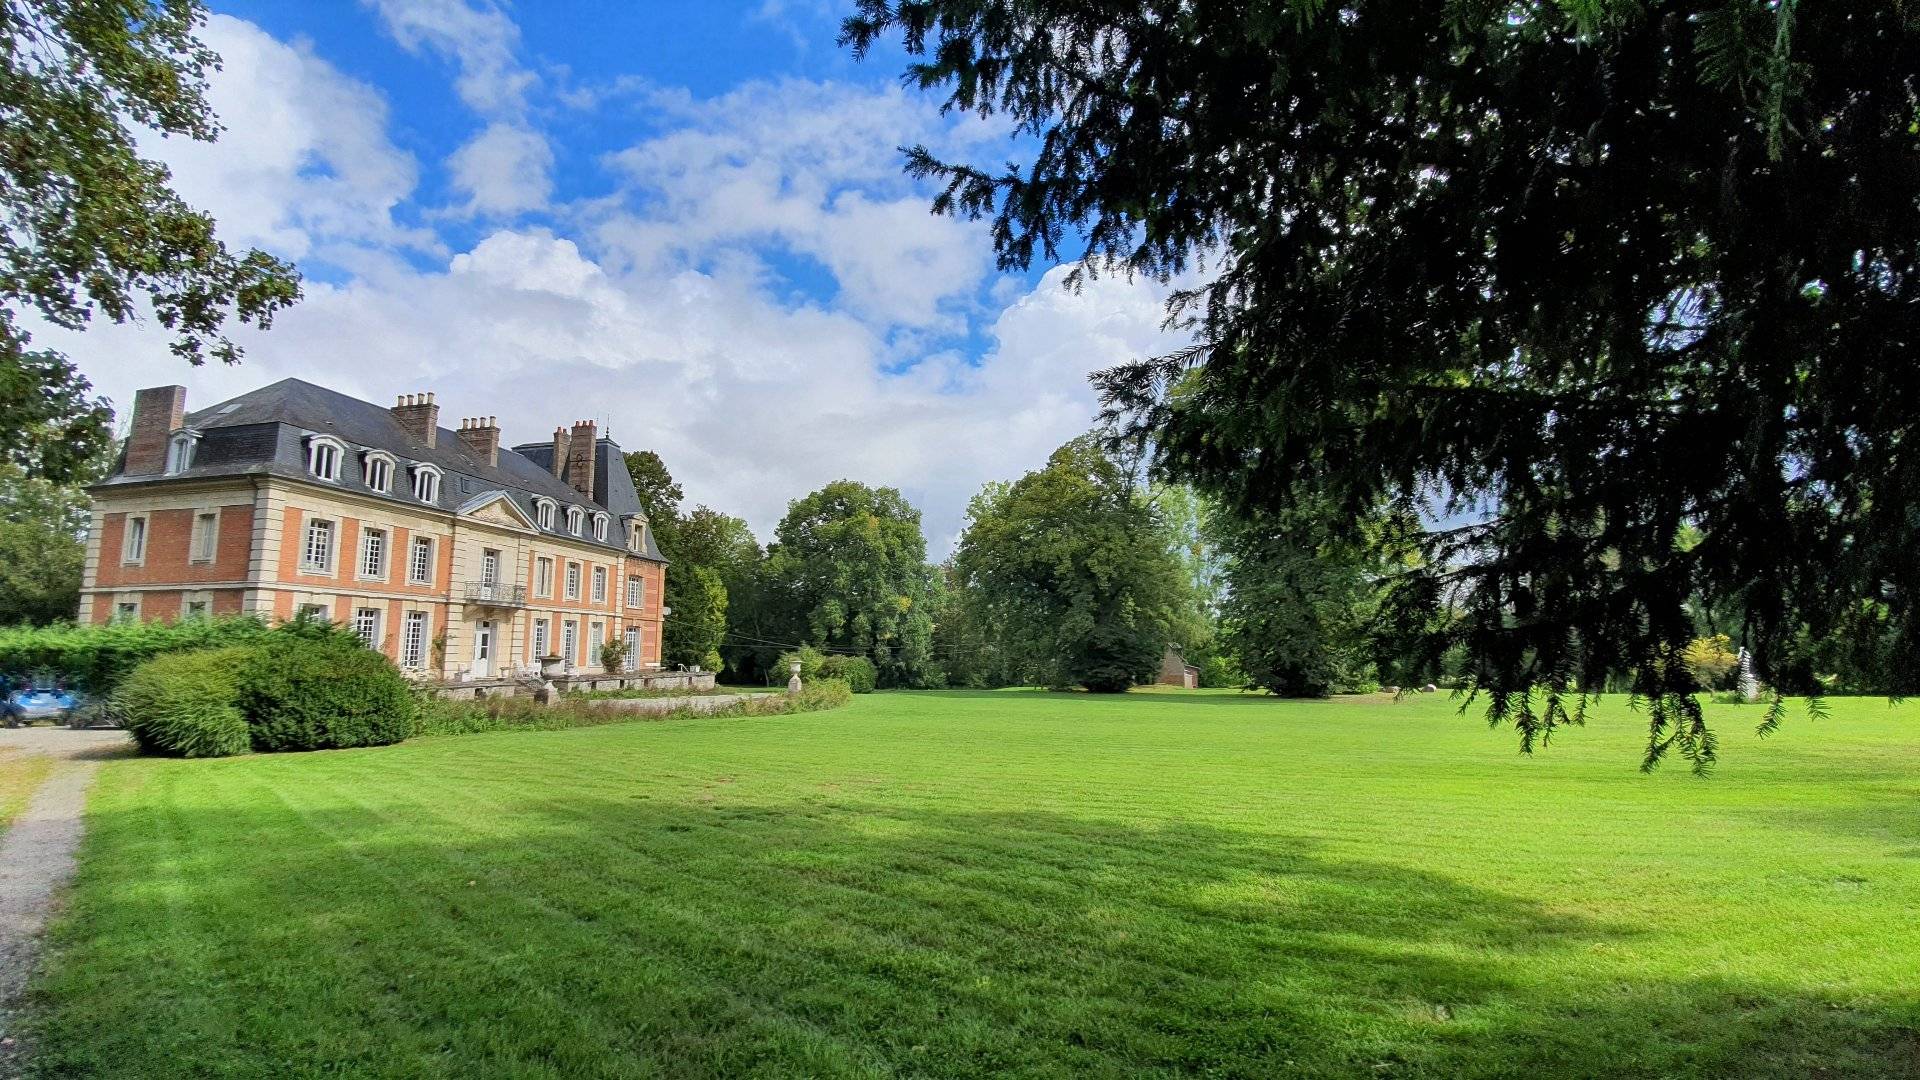 A vendre Château du 19ème siècle et annexes, au cœur d'un parc de 5.9 ha, proche de la mer à Dieppe 76200 en Normandie.